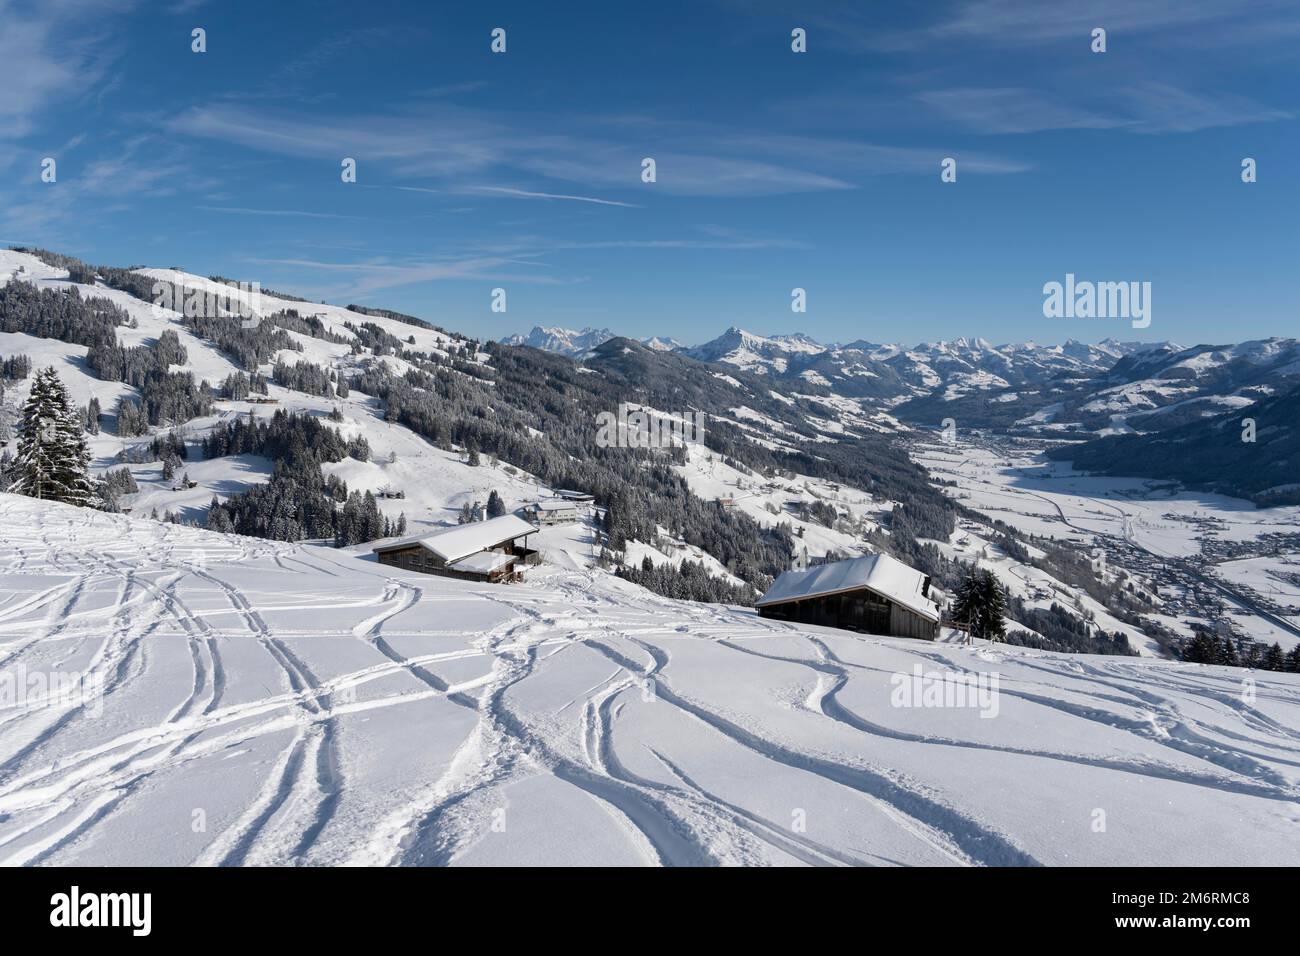 Piste da sci nella neve profonda, vista sulle montagne innevate, comprensorio sciistico Bixen im Thale, Tirolo, Austria Foto Stock